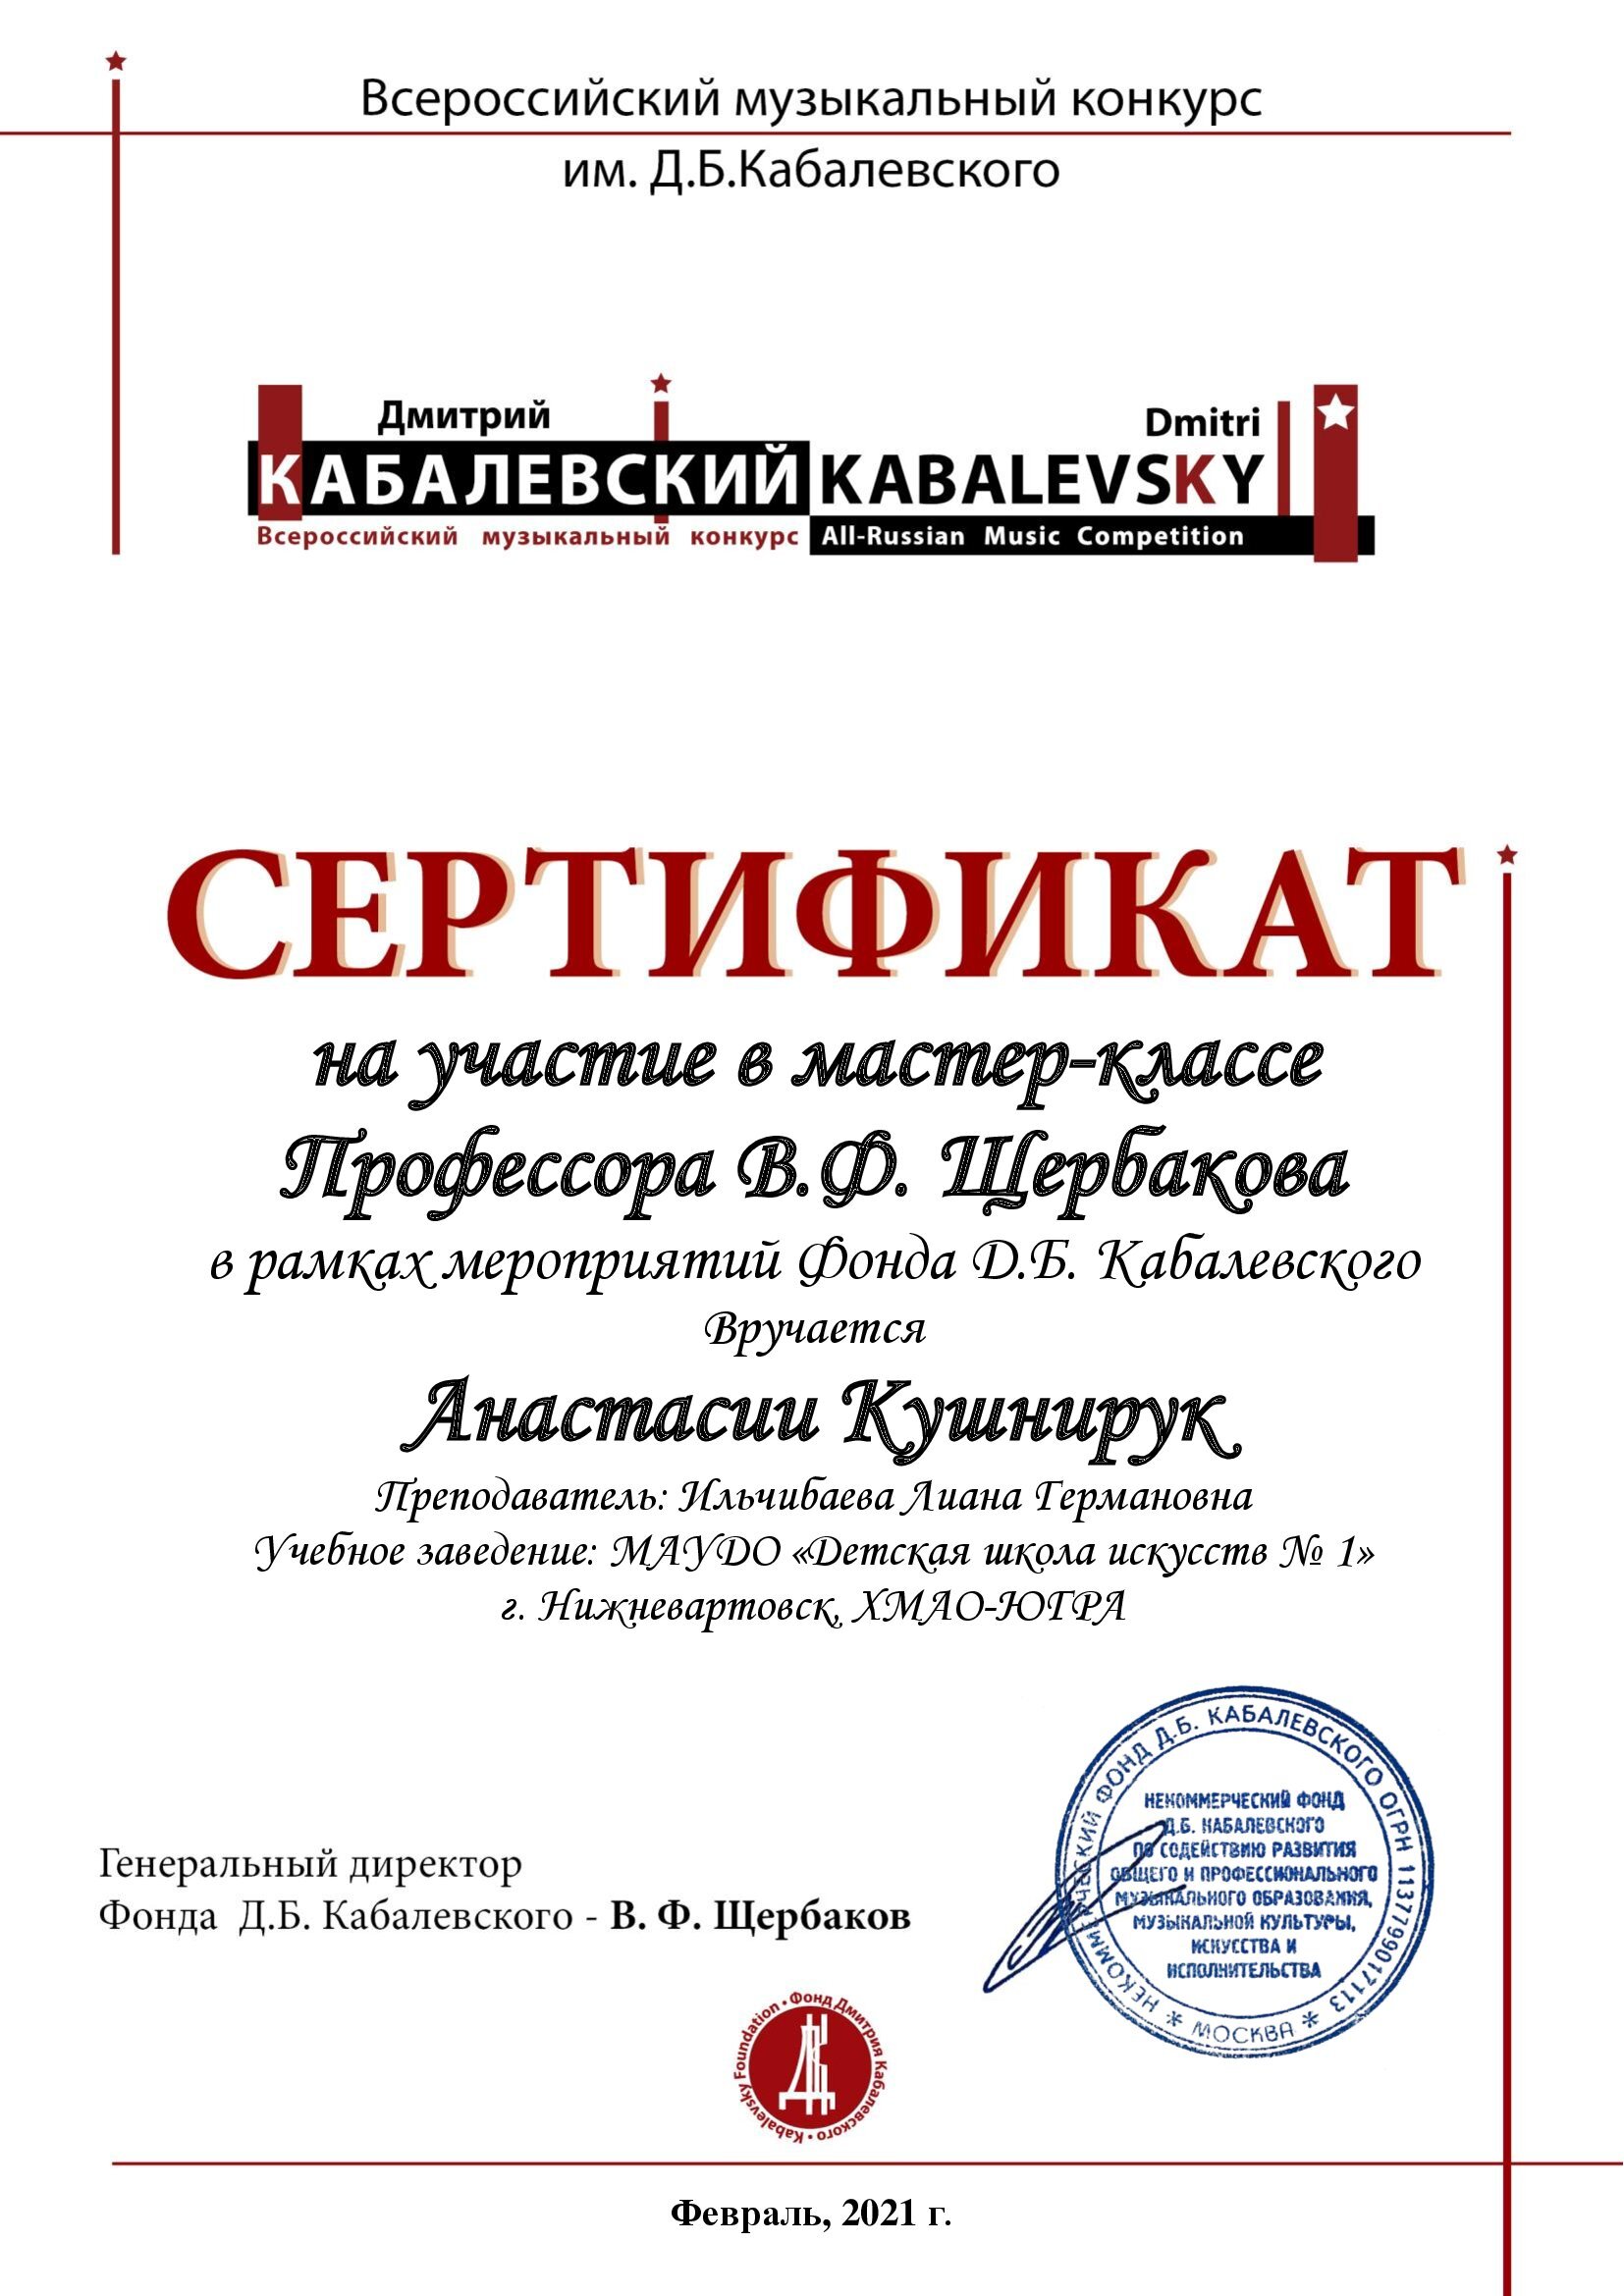 Сертификат на участие в мастер-классе Кушнирук Анастасии